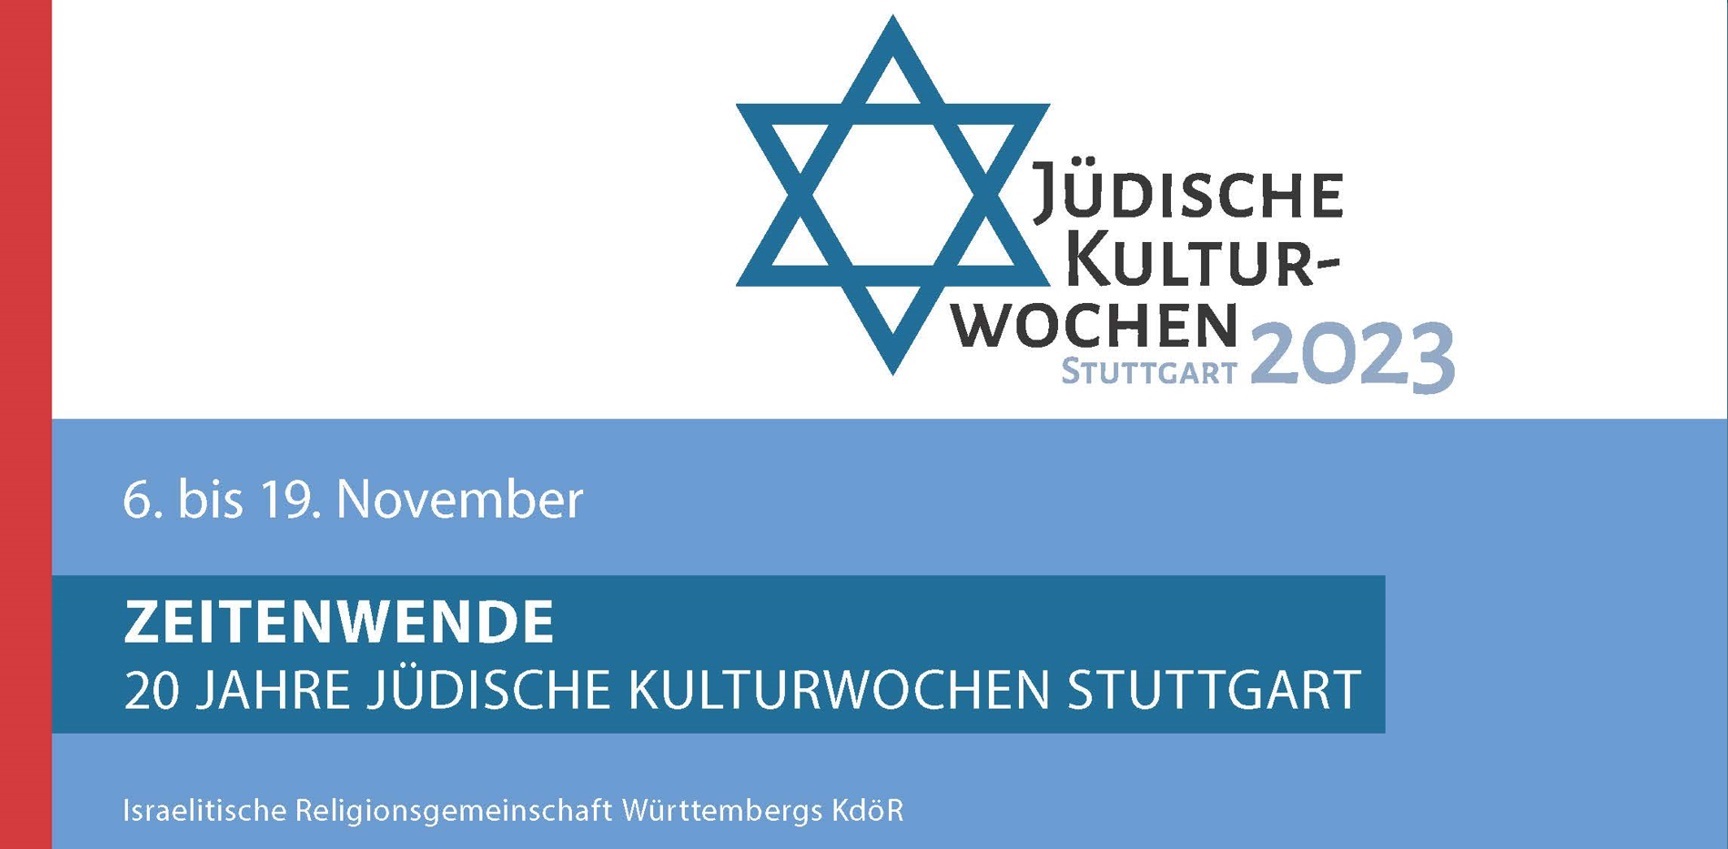 Jüdische Kulturwochen Stuttgart 2023 - ZEITENWENDE - 20 Jahre Jüdische Kulturwochen Stuttgart vom 6. bis 19. November 2023 - mehr unter www.irgw.de/kulturwochen